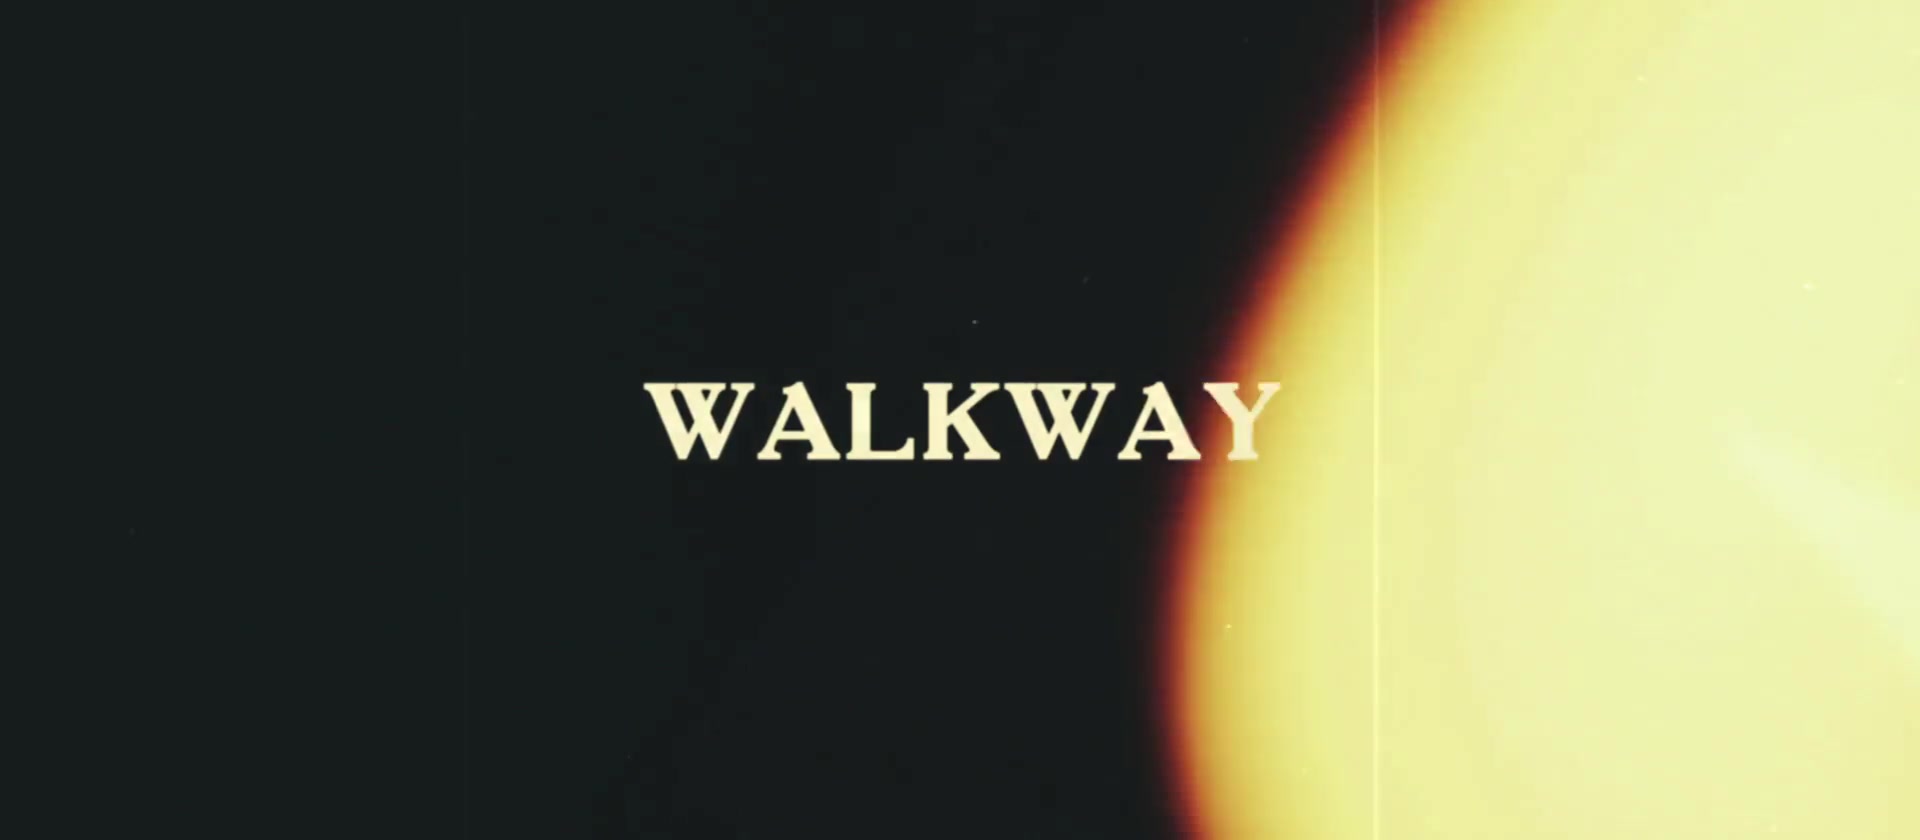 Vintage Film Titles Walkway Videohive 23046201 Premiere Pro Image 12